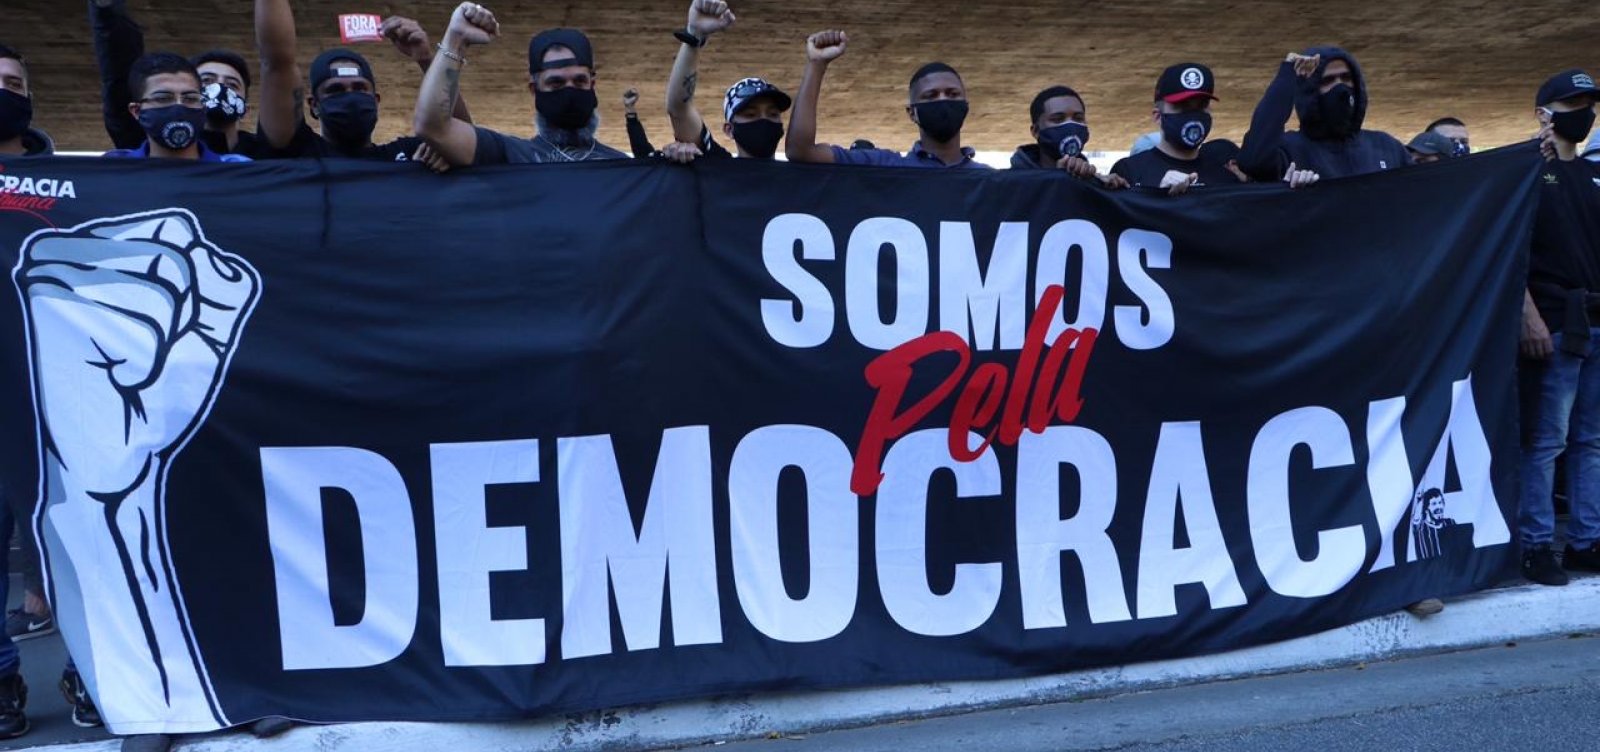 Manifestantes fazem ato contra o fascismo e pró-democracia em São Paulo